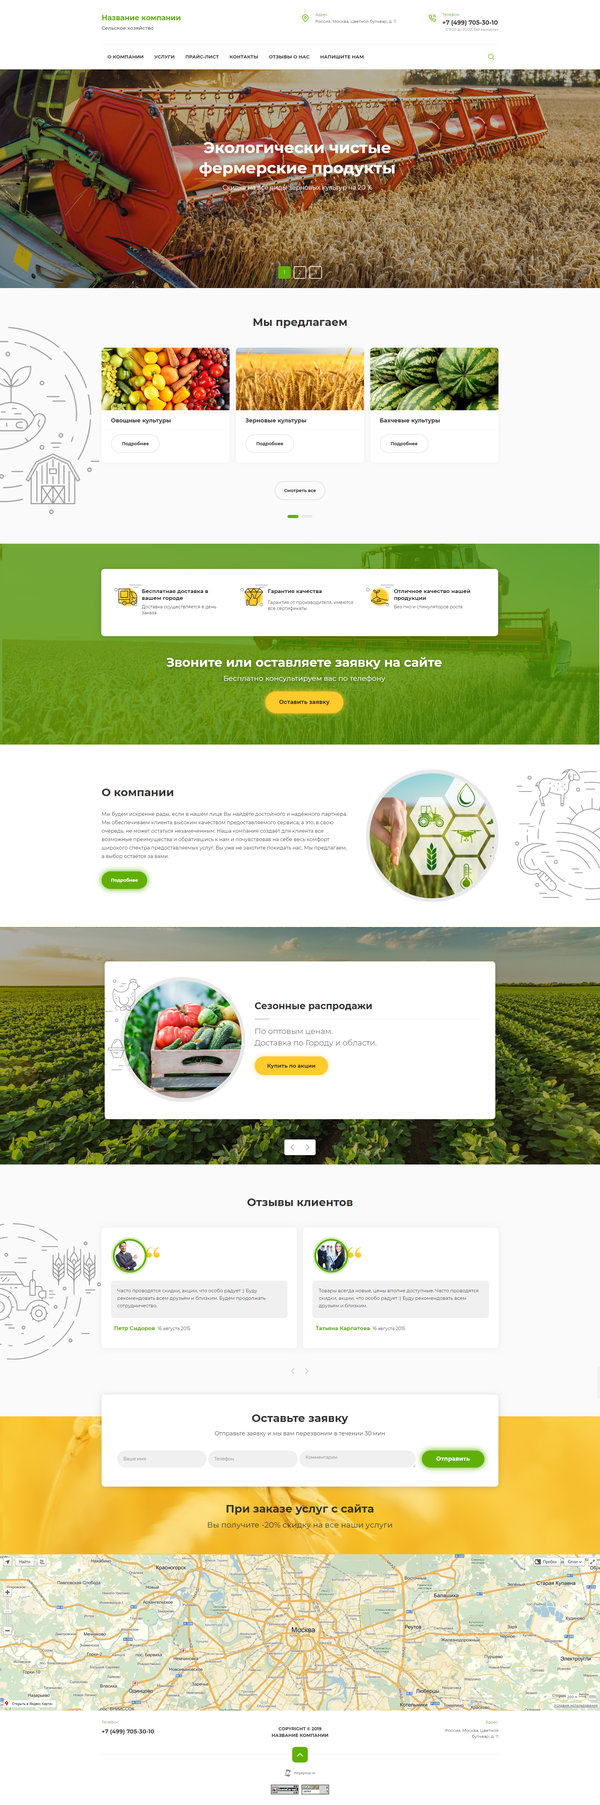 Готовый Сайт-Бизнес № 2518196 - Сельское хозяйство (Десктопная версия)